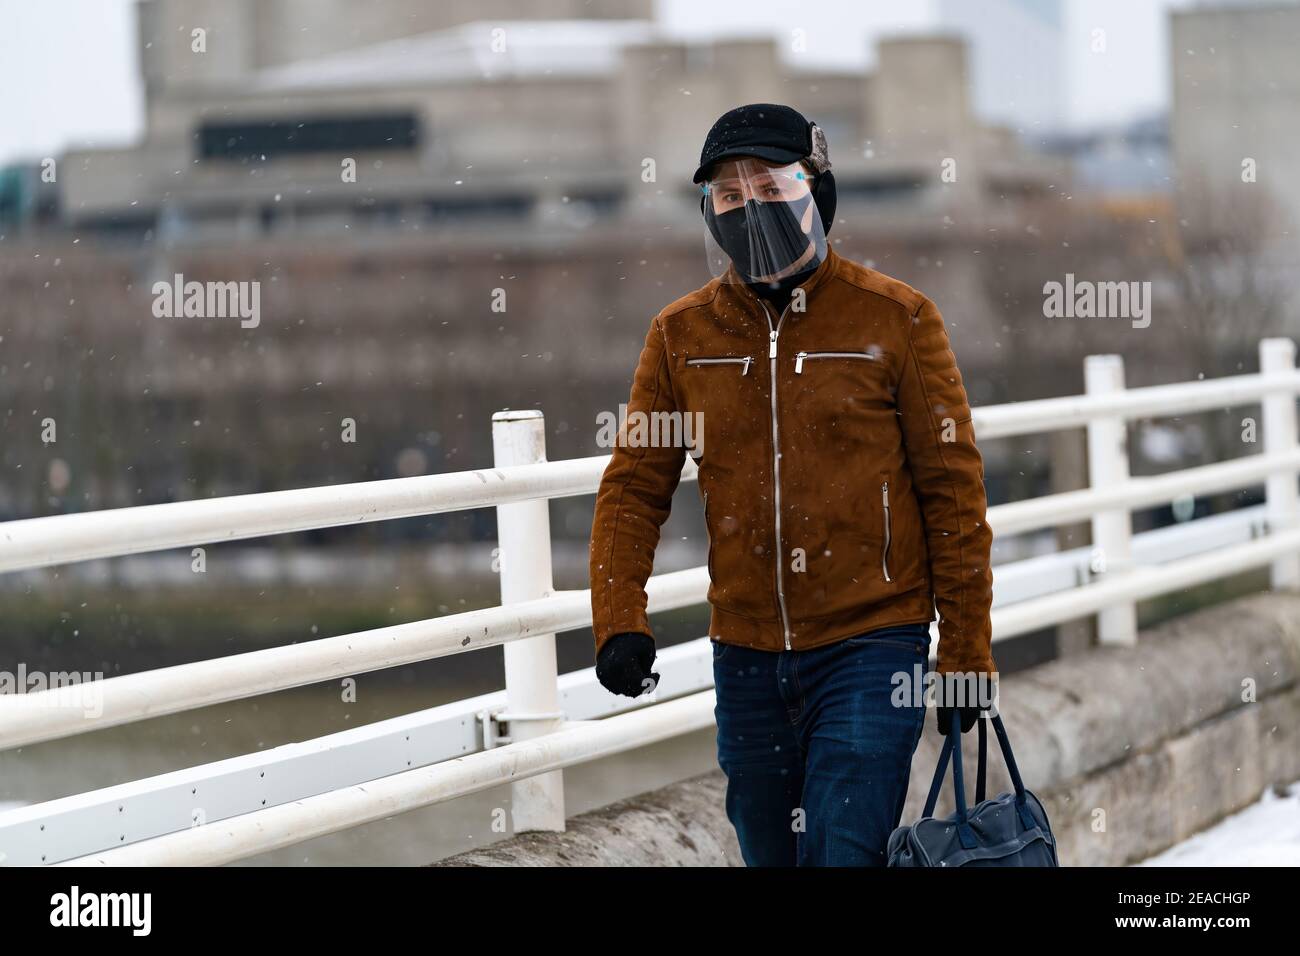 LONDON, ENGLAND - FEBRUAR, 2021: Junger Mann, der die Kamera mit Gesichtsmaske und Gesichtsschild anschaut, läuft auf der Waterloo Bridge in London während eines s Stockfoto